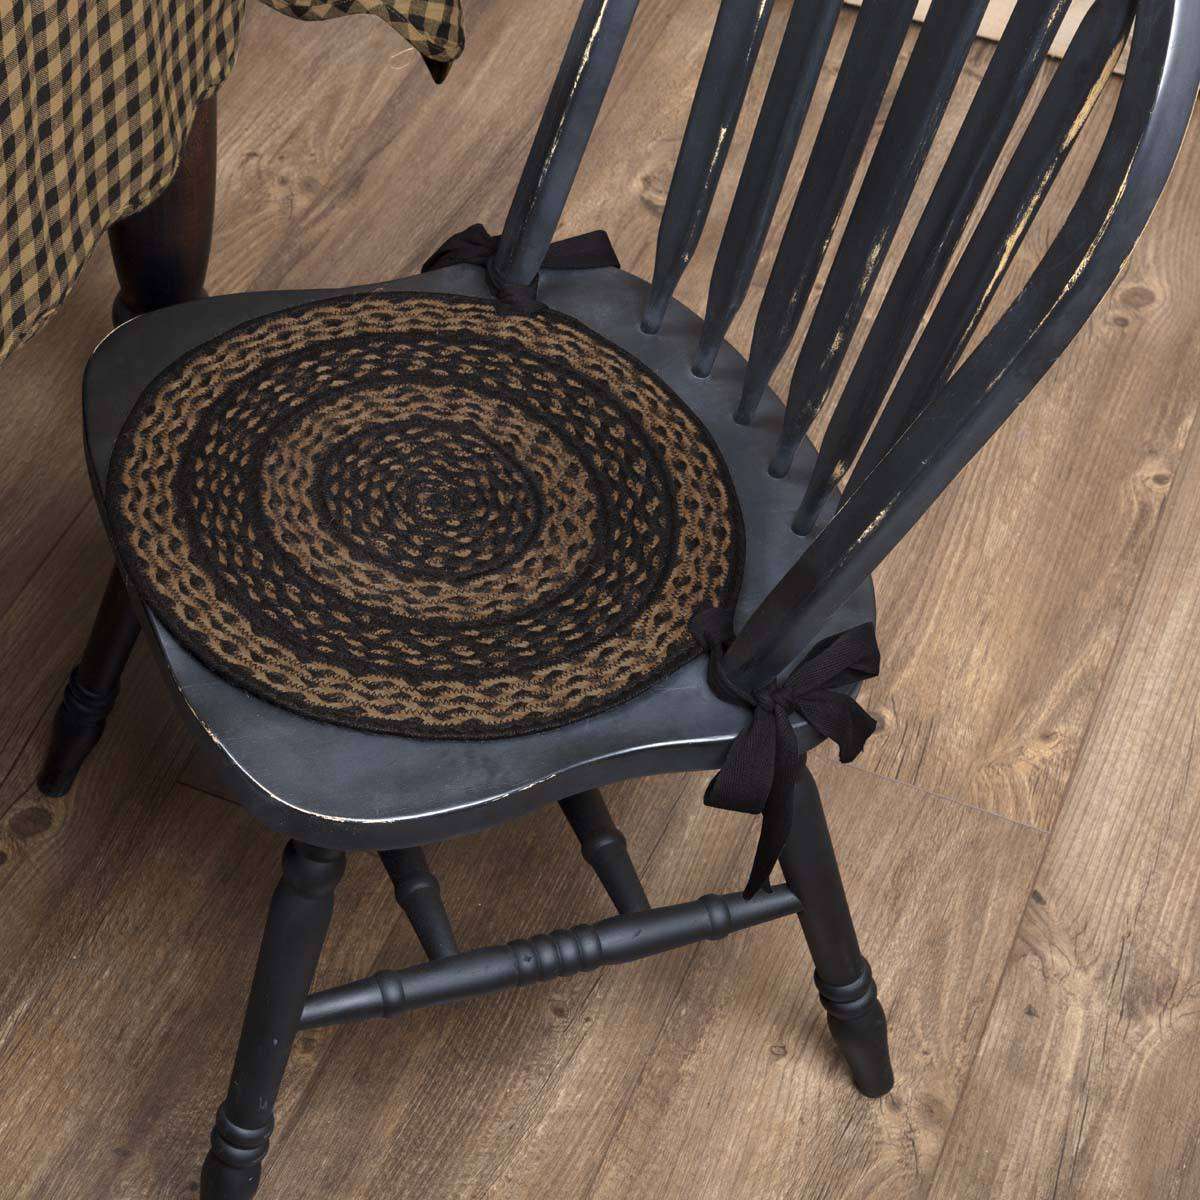 Farmhouse Jute Braided Chair Pad Set of 6 Black & Tan Chair Pad VHC Brands 